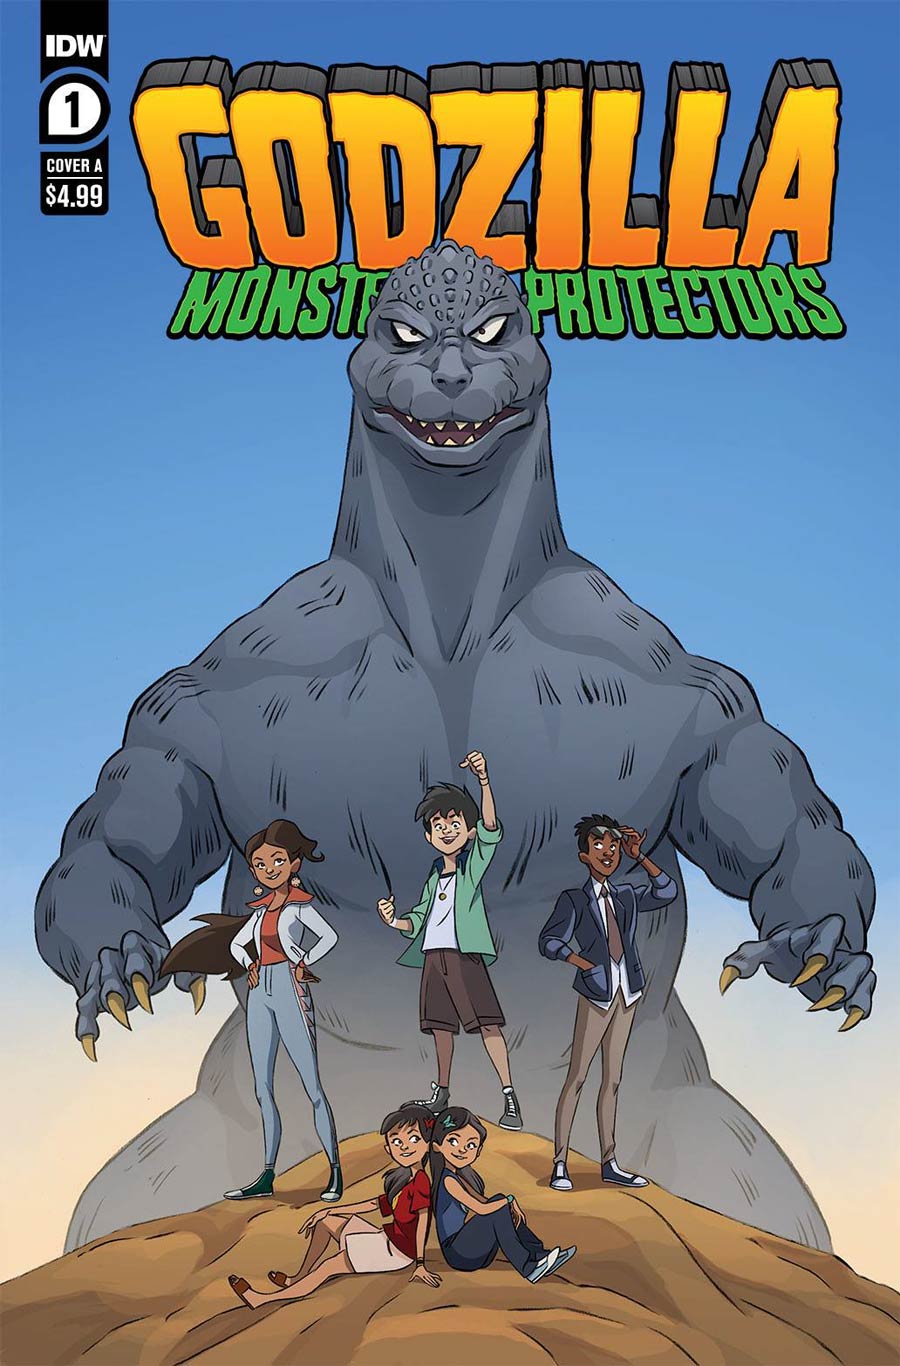 Godzilla Monsters & Protectors #1 Cover A Regular Dan Schoening Cover